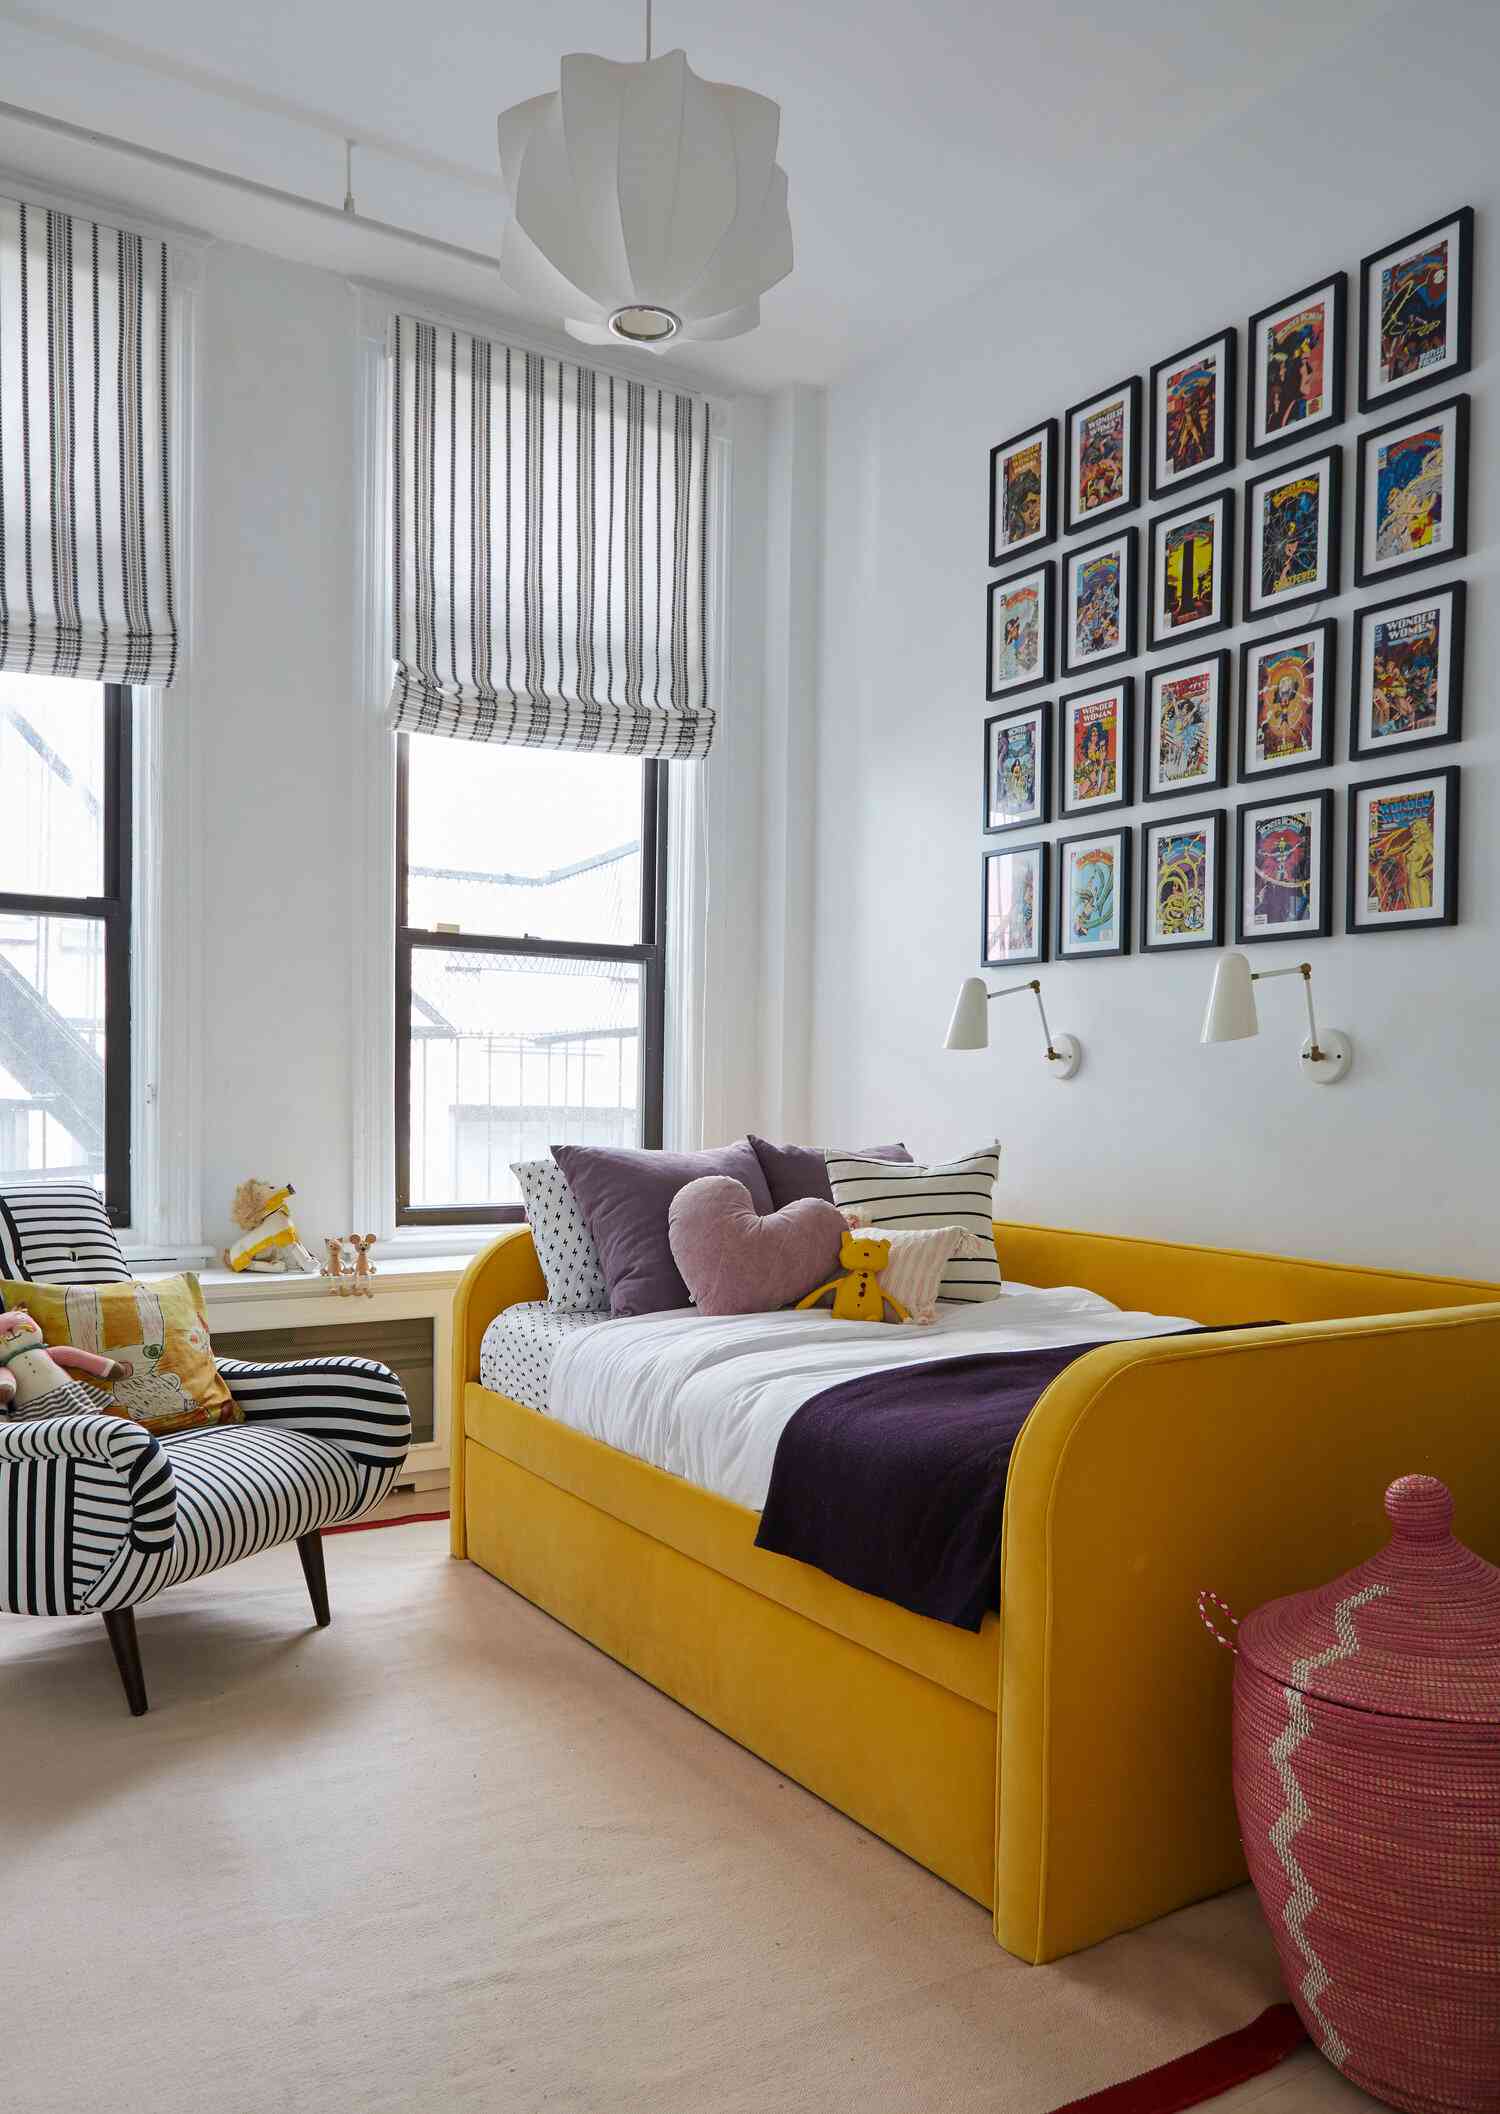 Jugendzimmer mit gelber Schlafcouch und Galeriewand aus Comic-Covern.